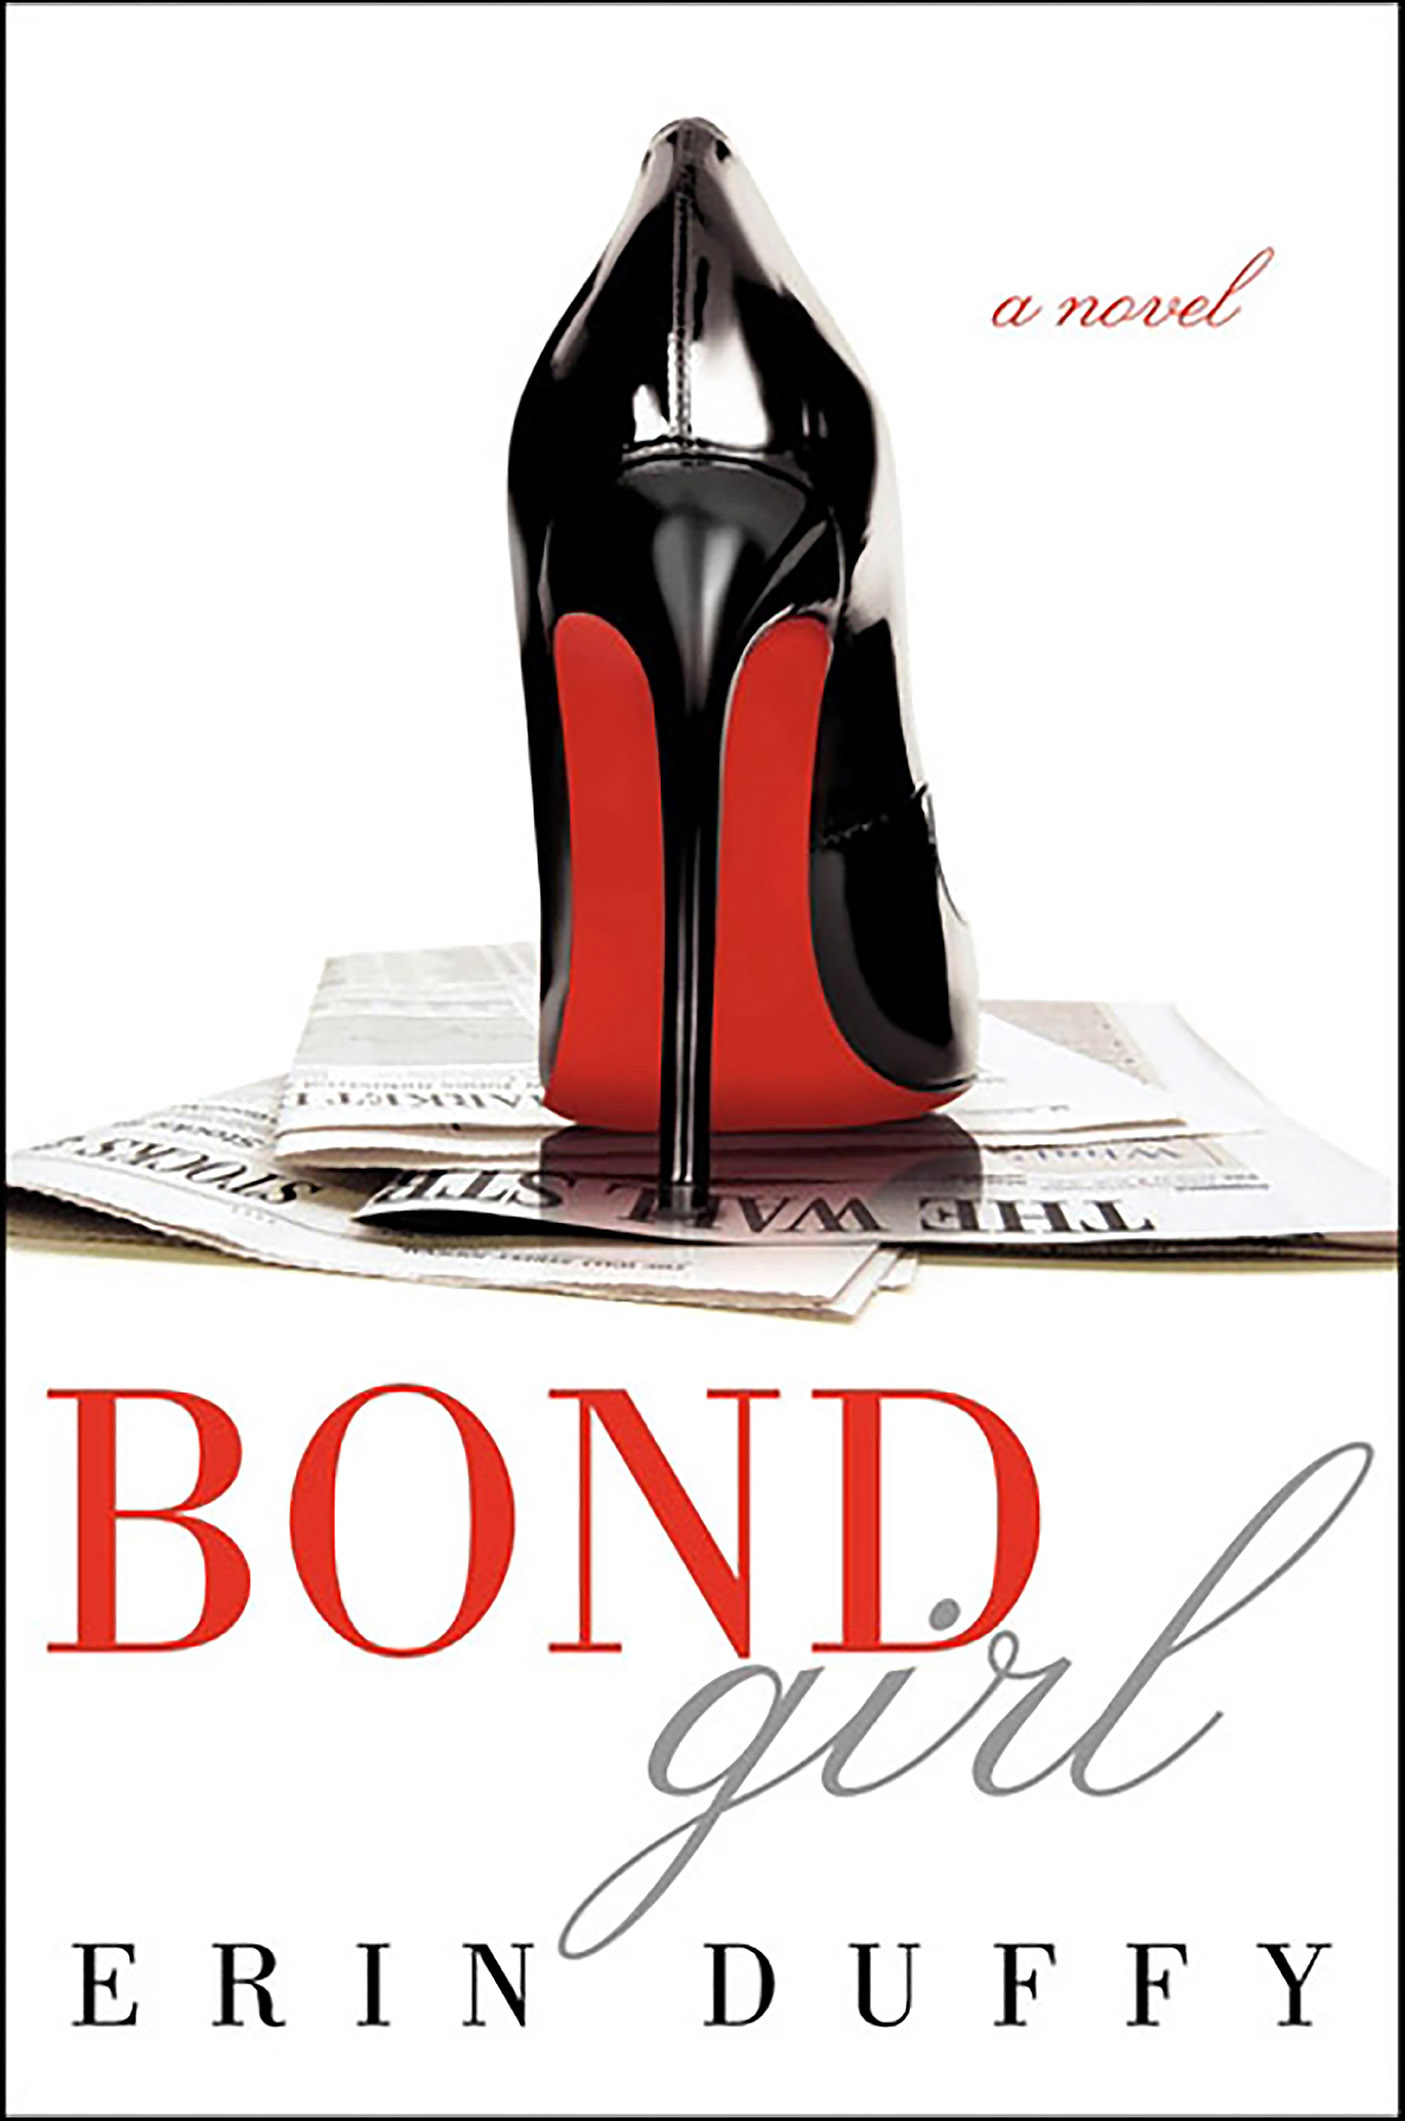 Bond girl cover image